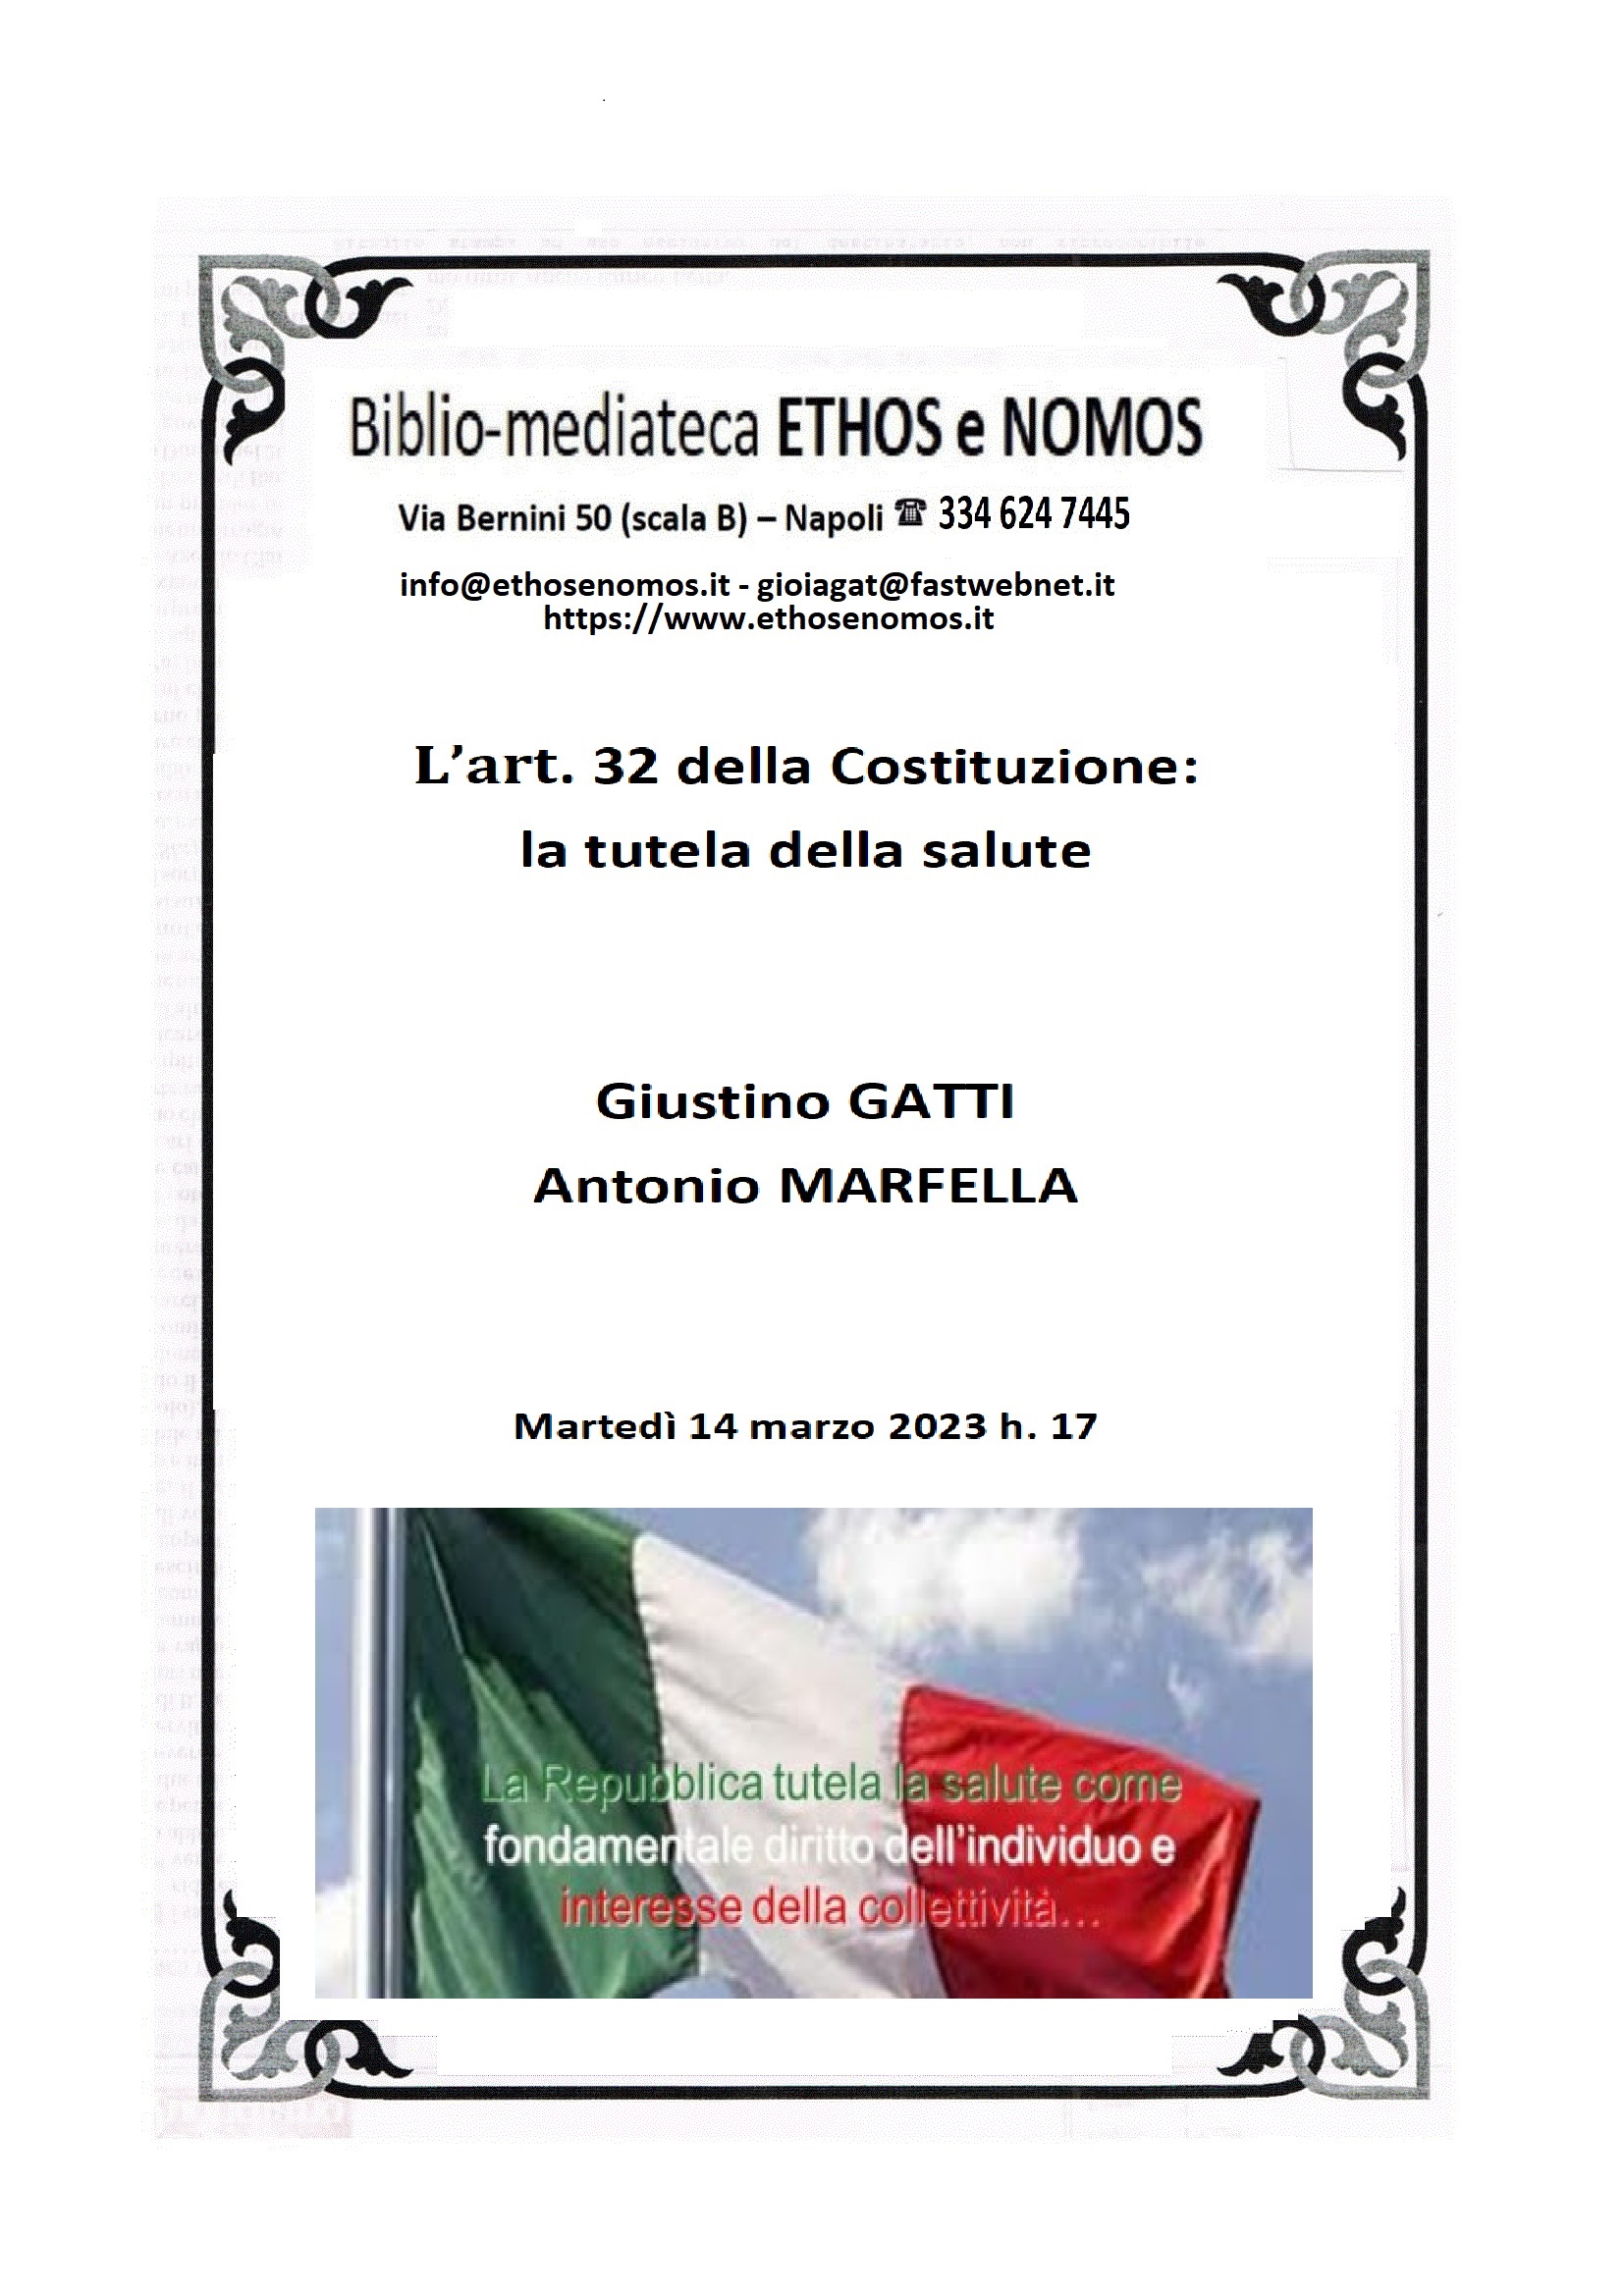 Giustino GATTI e Antonio MARFELLA: L'art. 32 della Costituzione